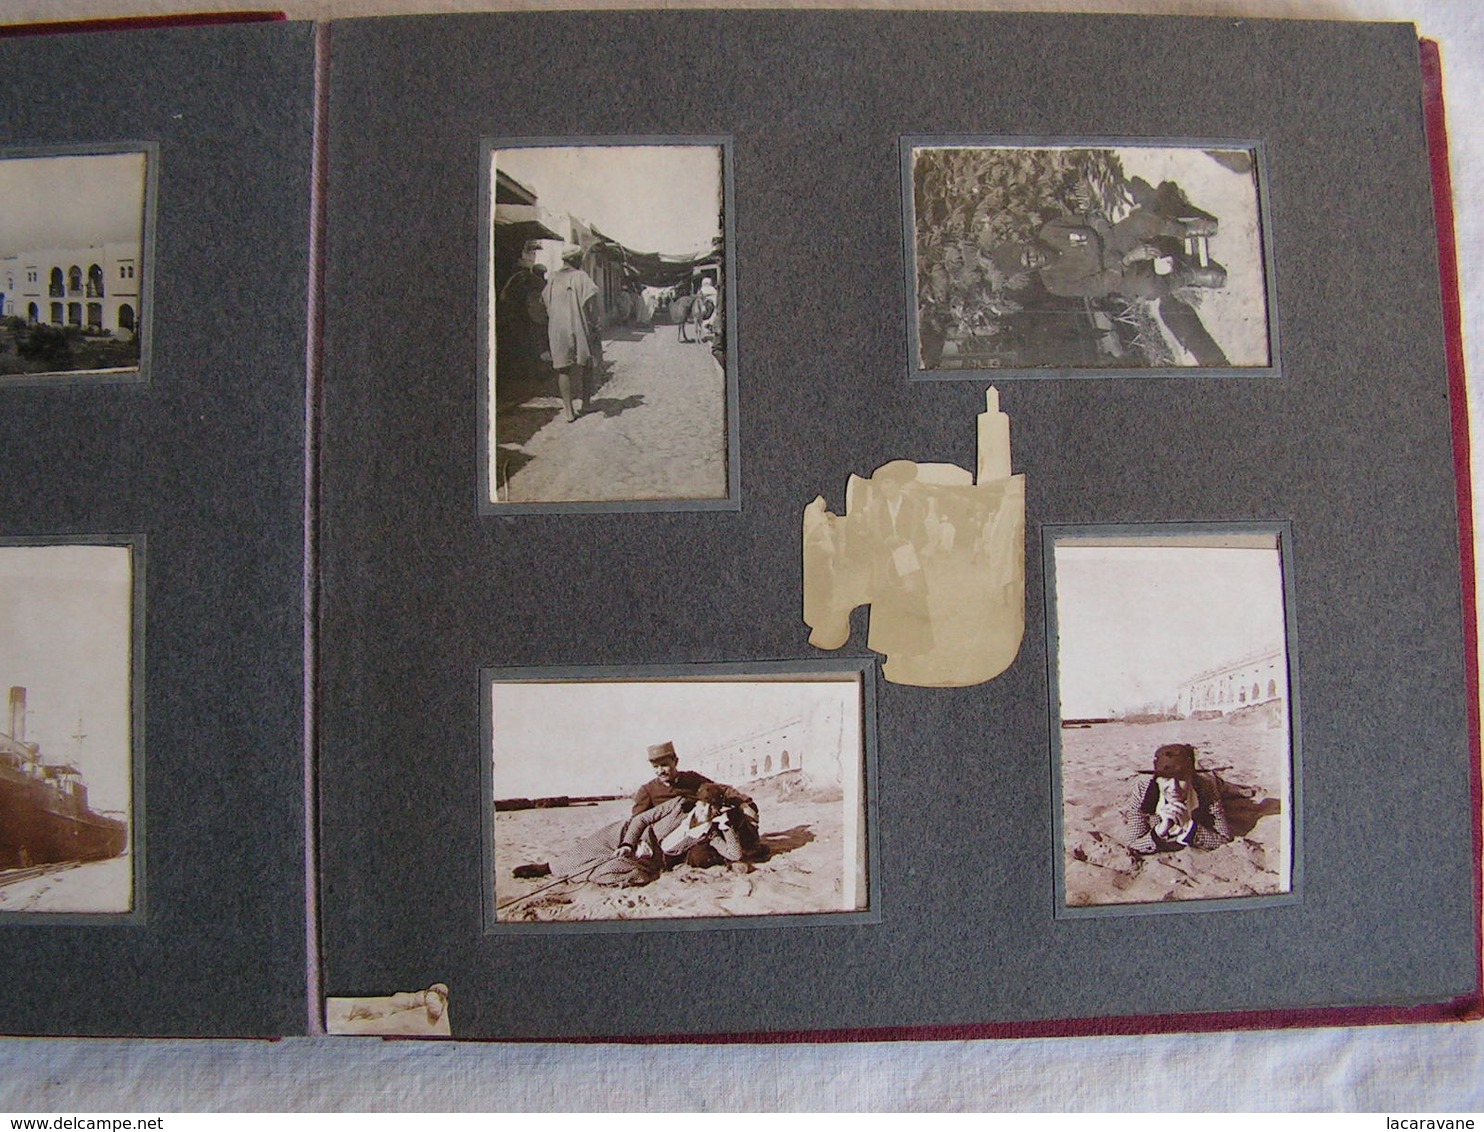 ancien album photo photographie voyage maroc ww1 1916-1918 soldat general marechal joffre ? militaires a voir